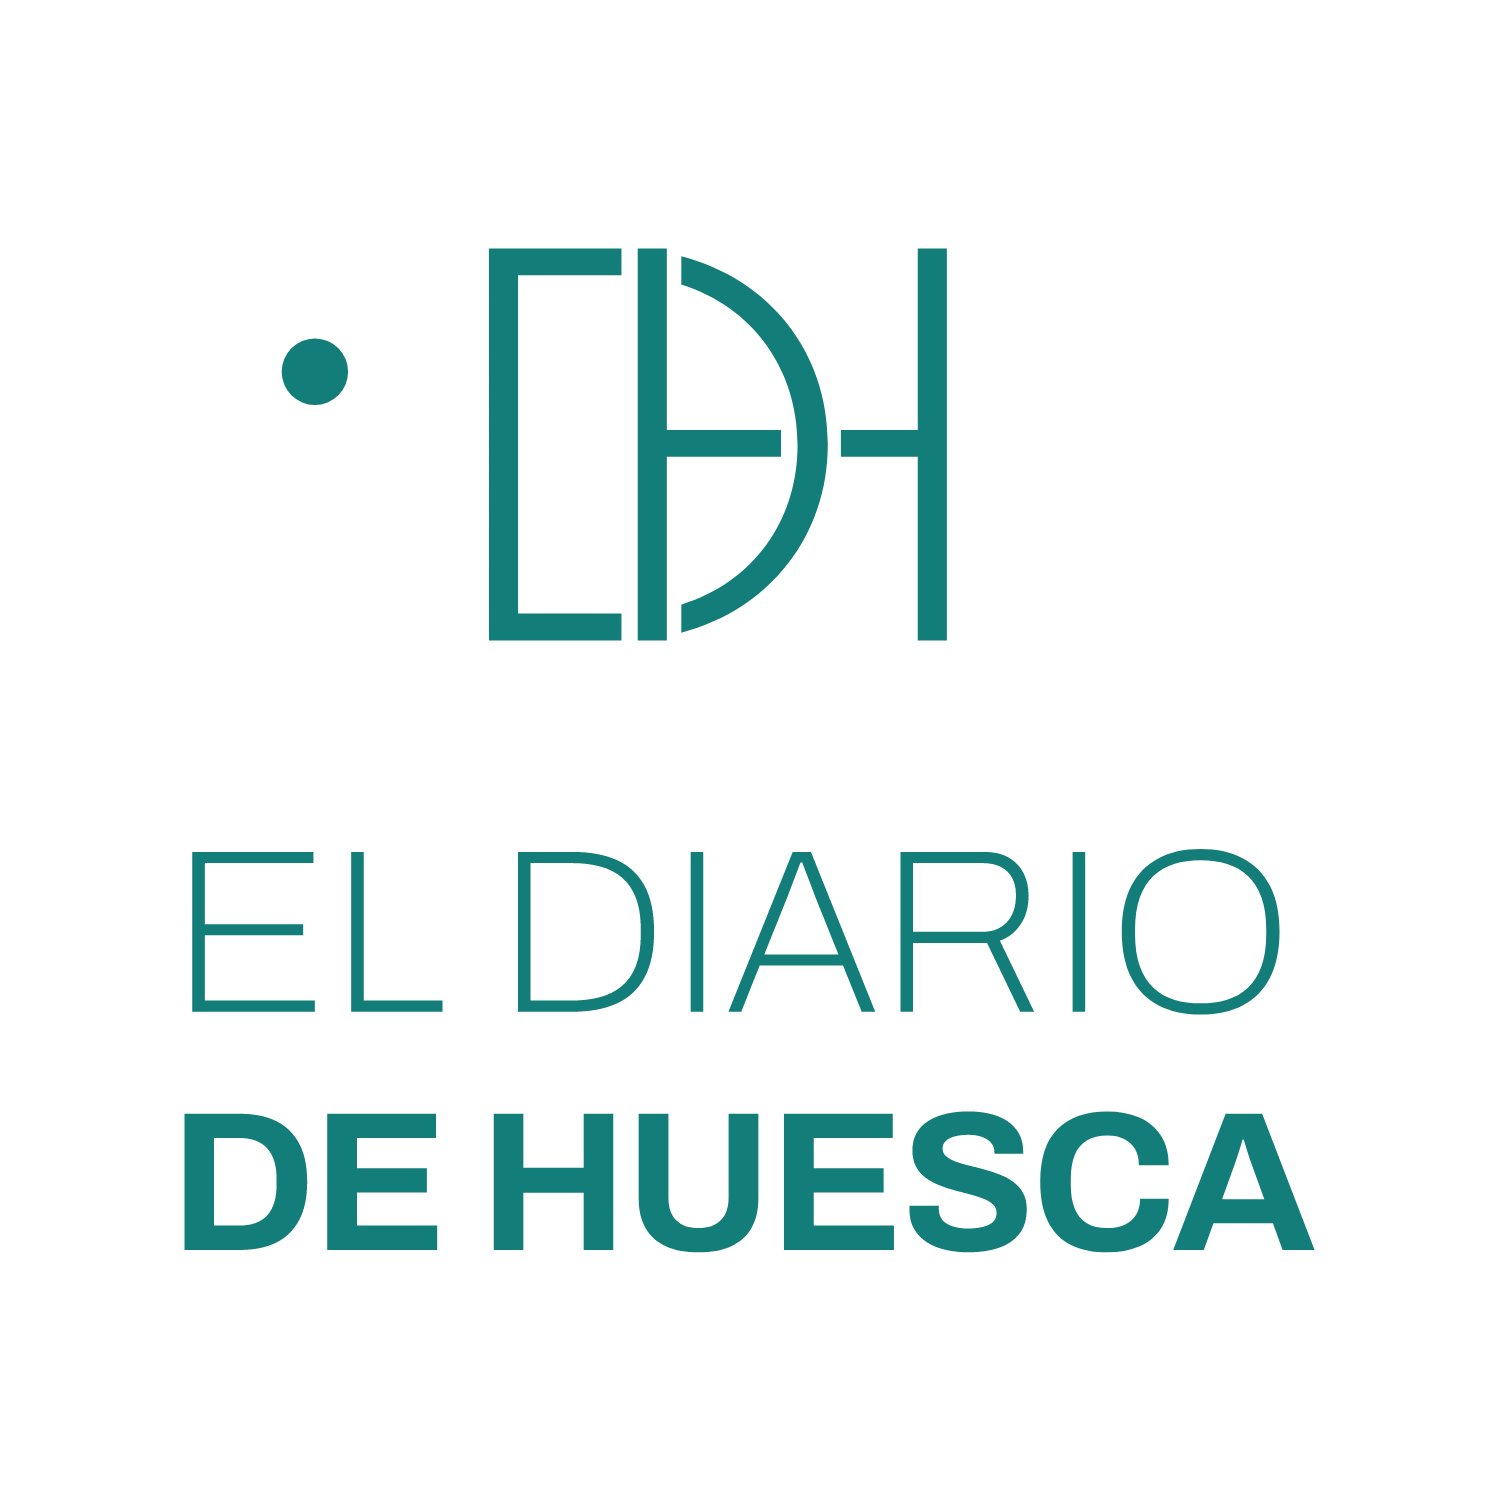 El Diario de Huesca